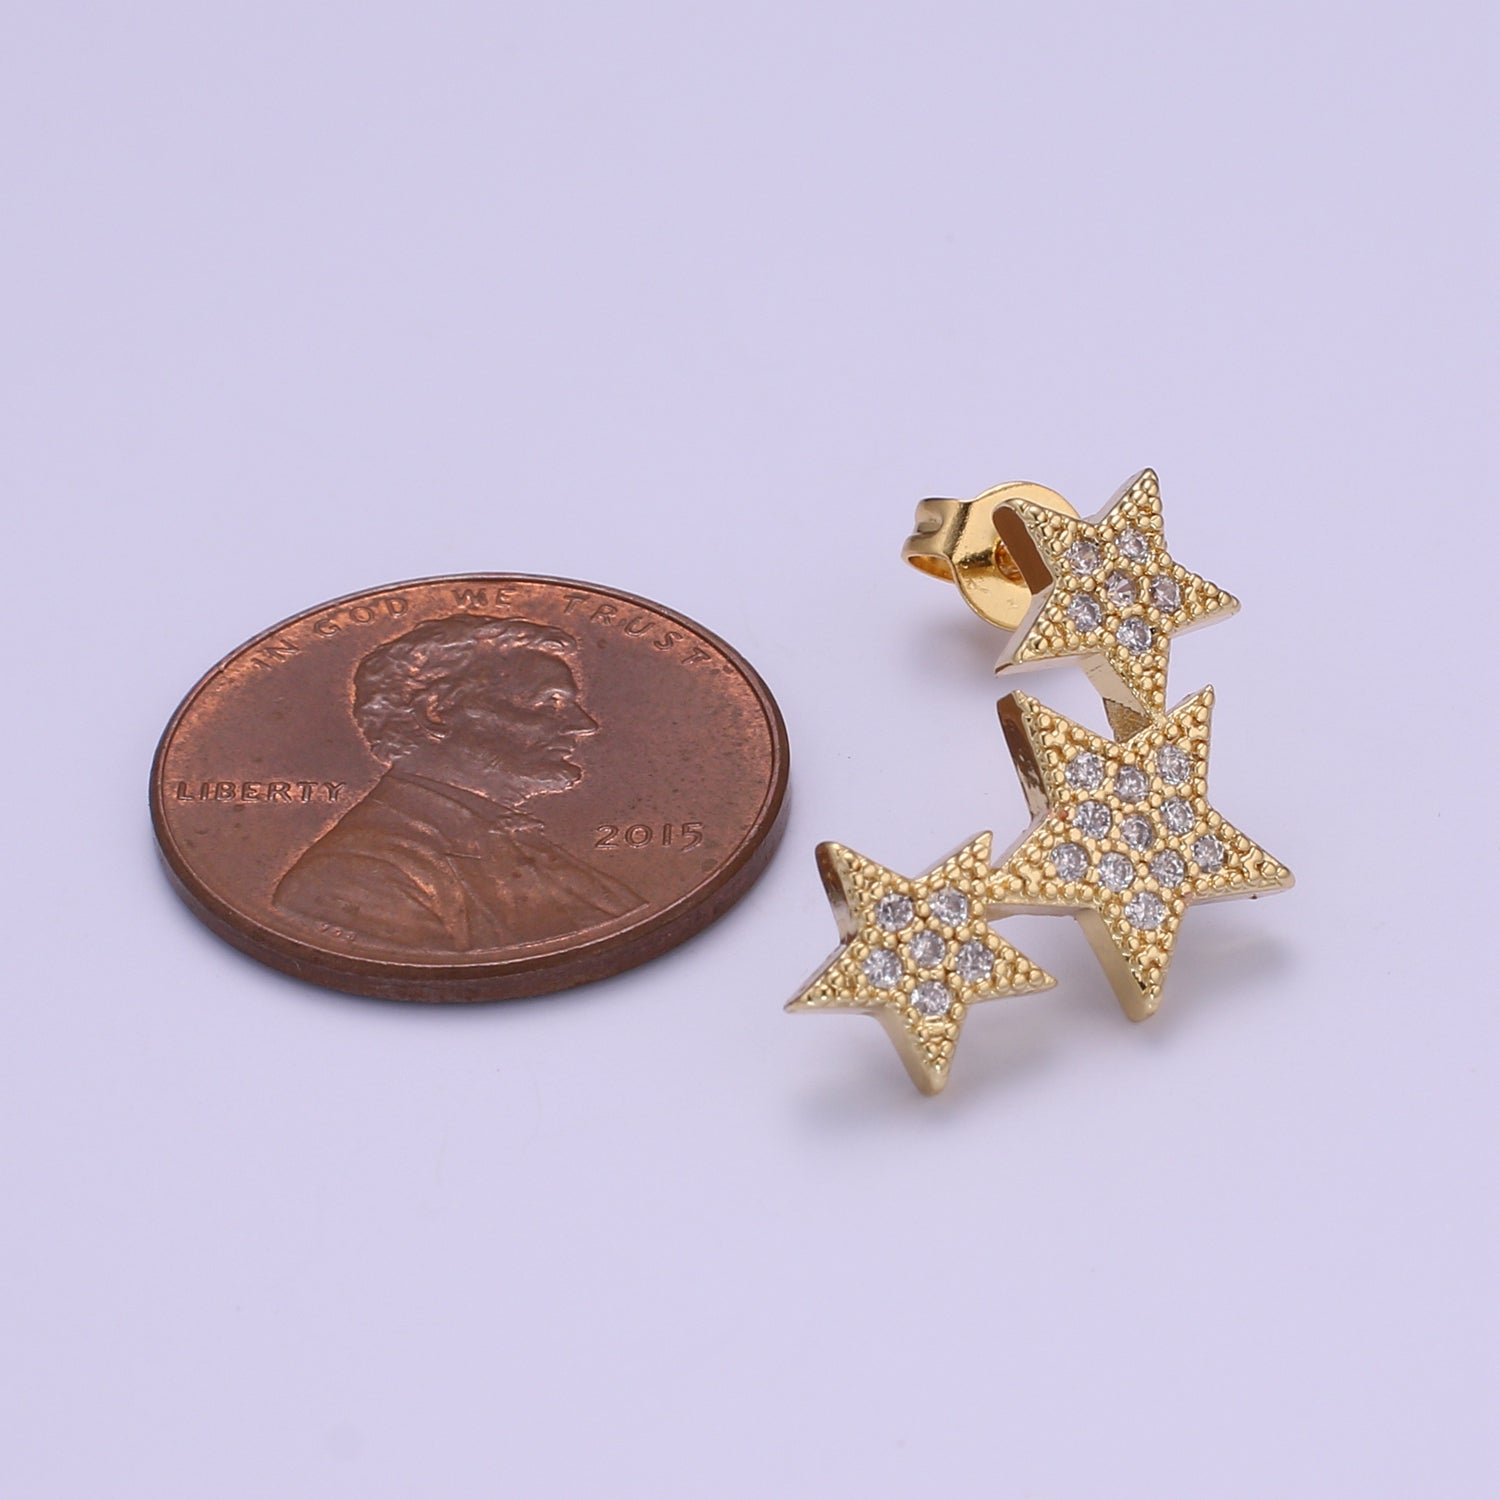 1x Dainty Star CZ Stud Earrings, 14K gold earring, tiny studs, minimal earring, gold cz stud earring P072 - DLUXCA